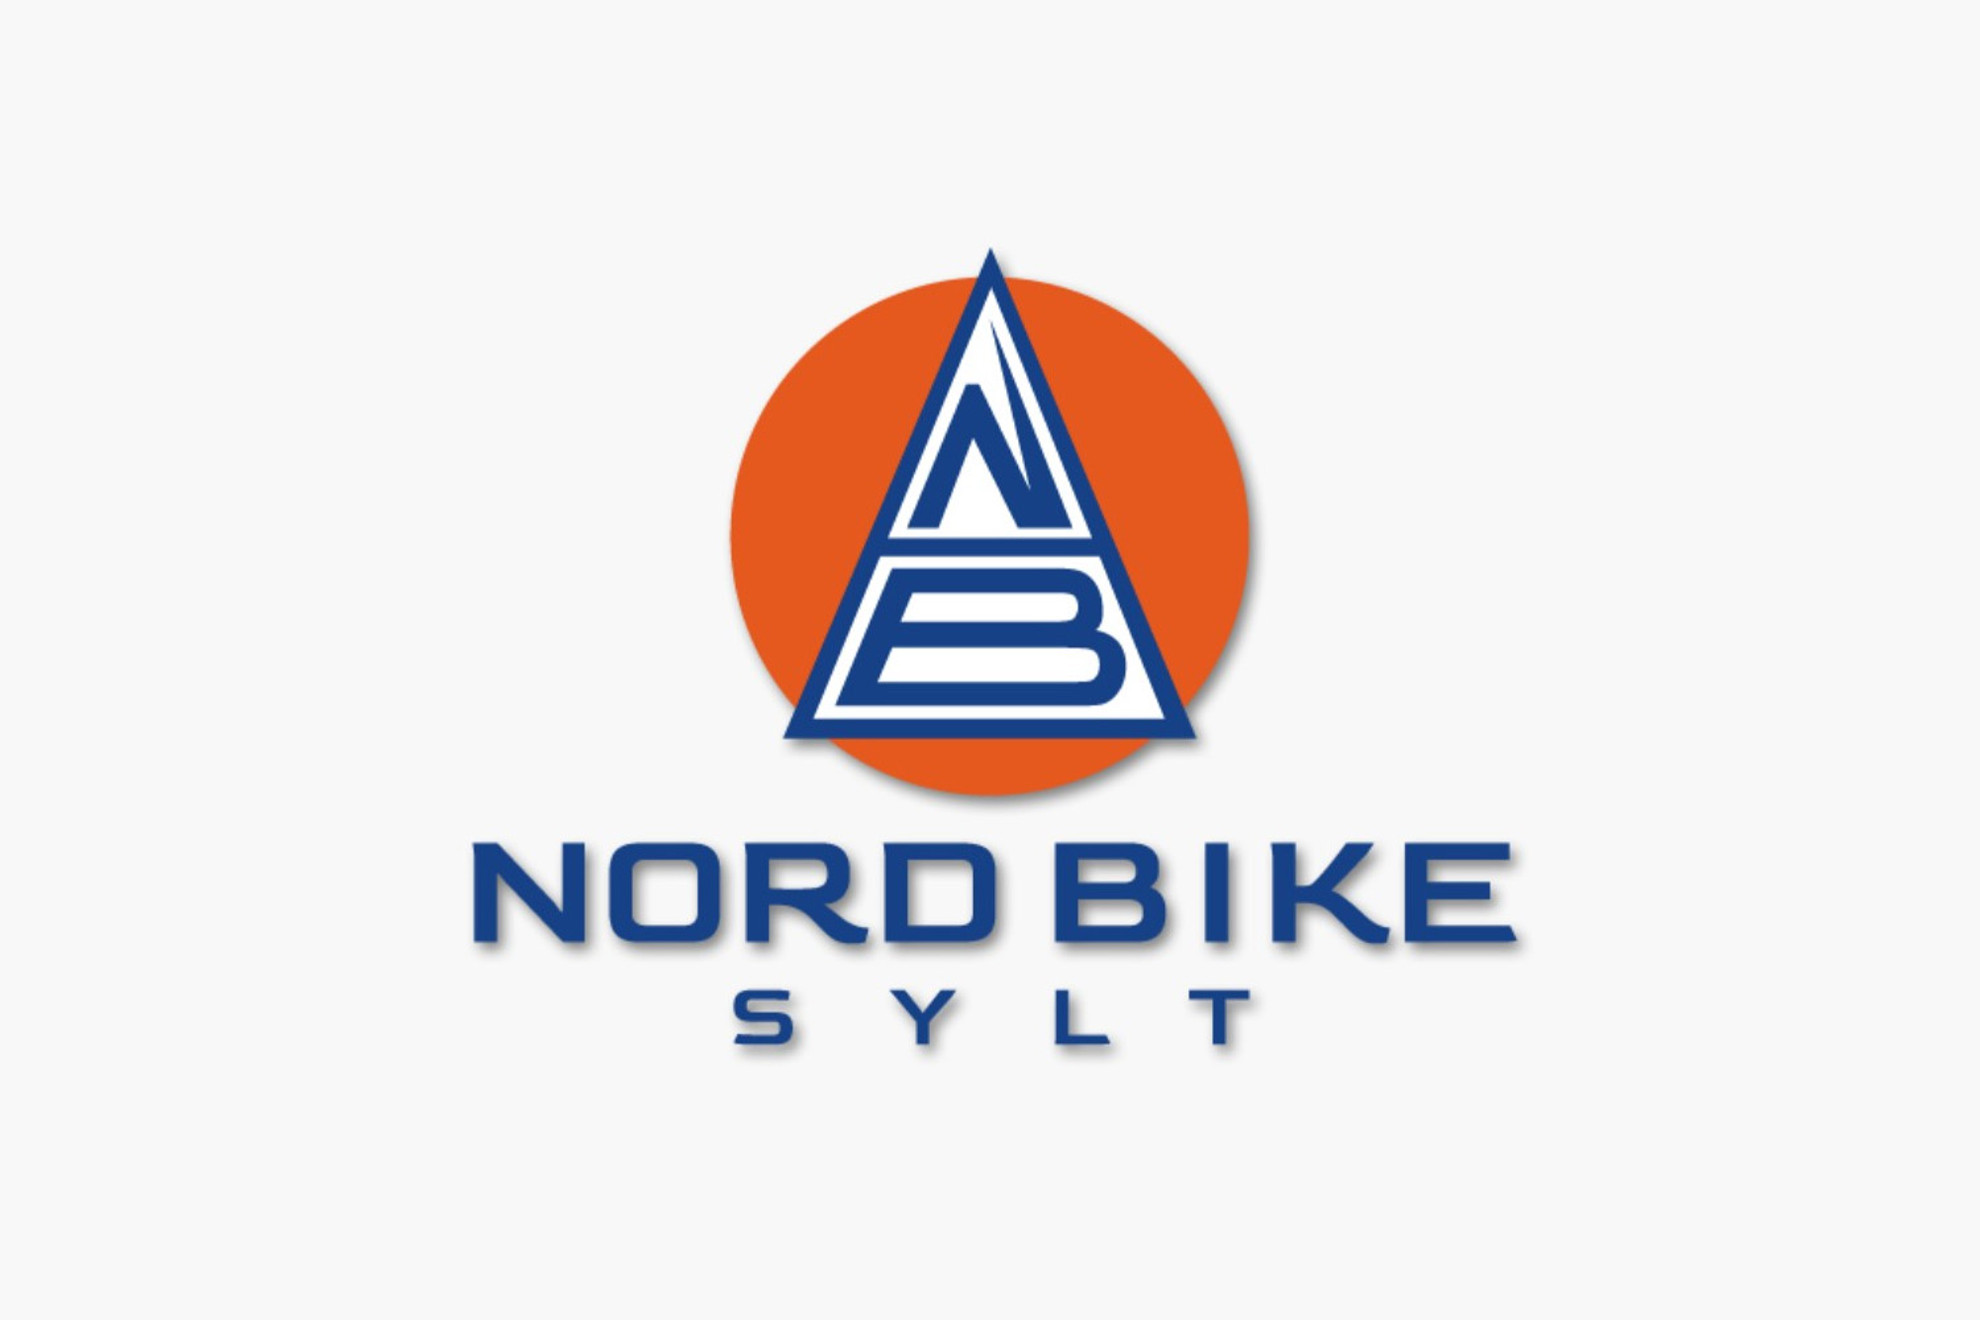 nord-bike-sylt-logo.jpg